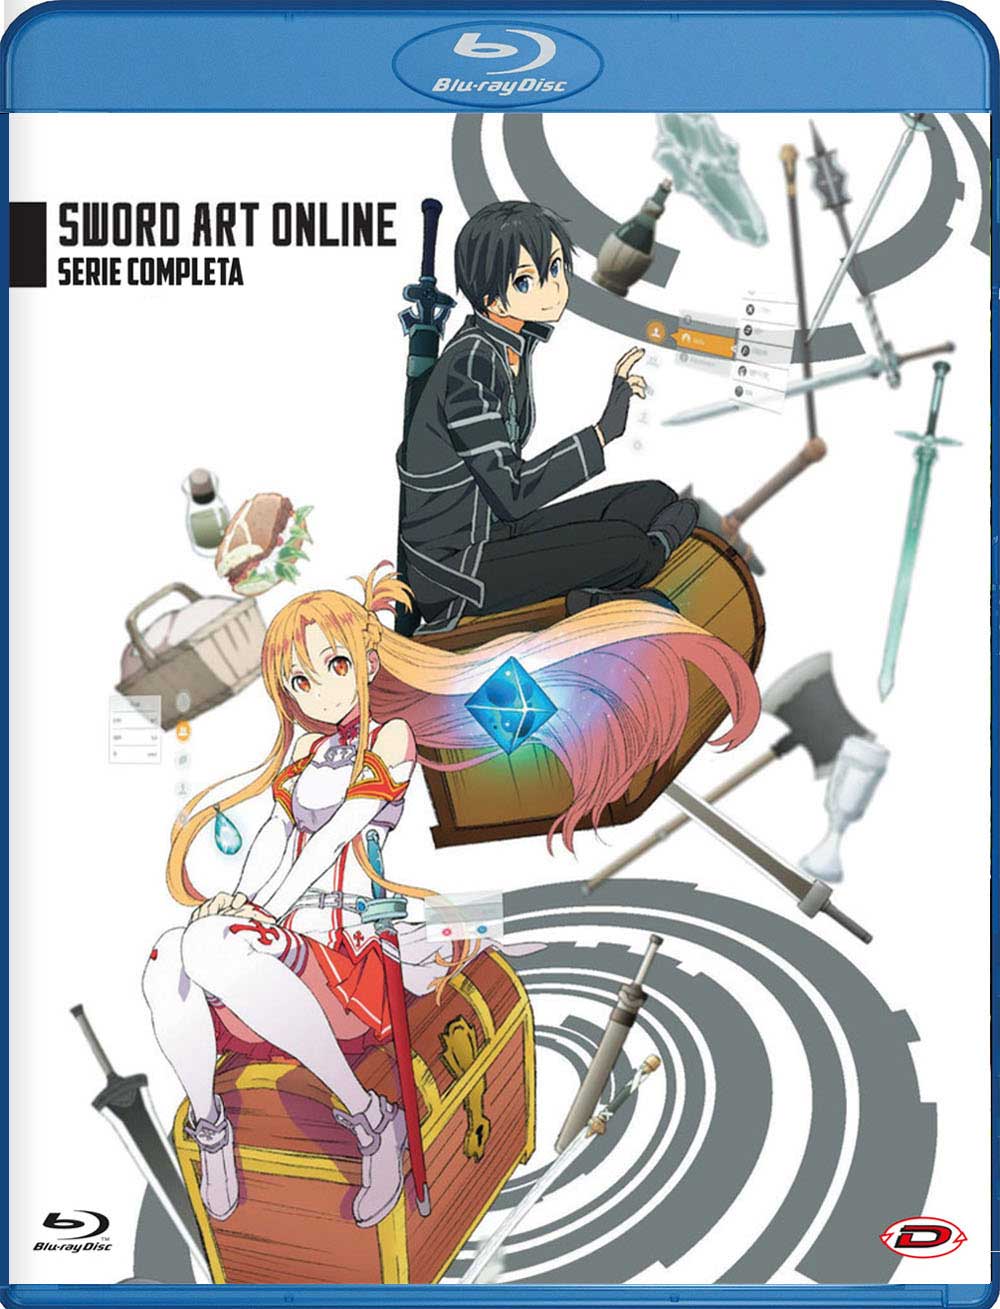 Blu-Ray Sword Art Online - The Complete Series (Eps 01-25) (5 Blu-Ray) NUOVO SIGILLATO, EDIZIONE DEL 26/09/2018 SUBITO DISPONIBILE